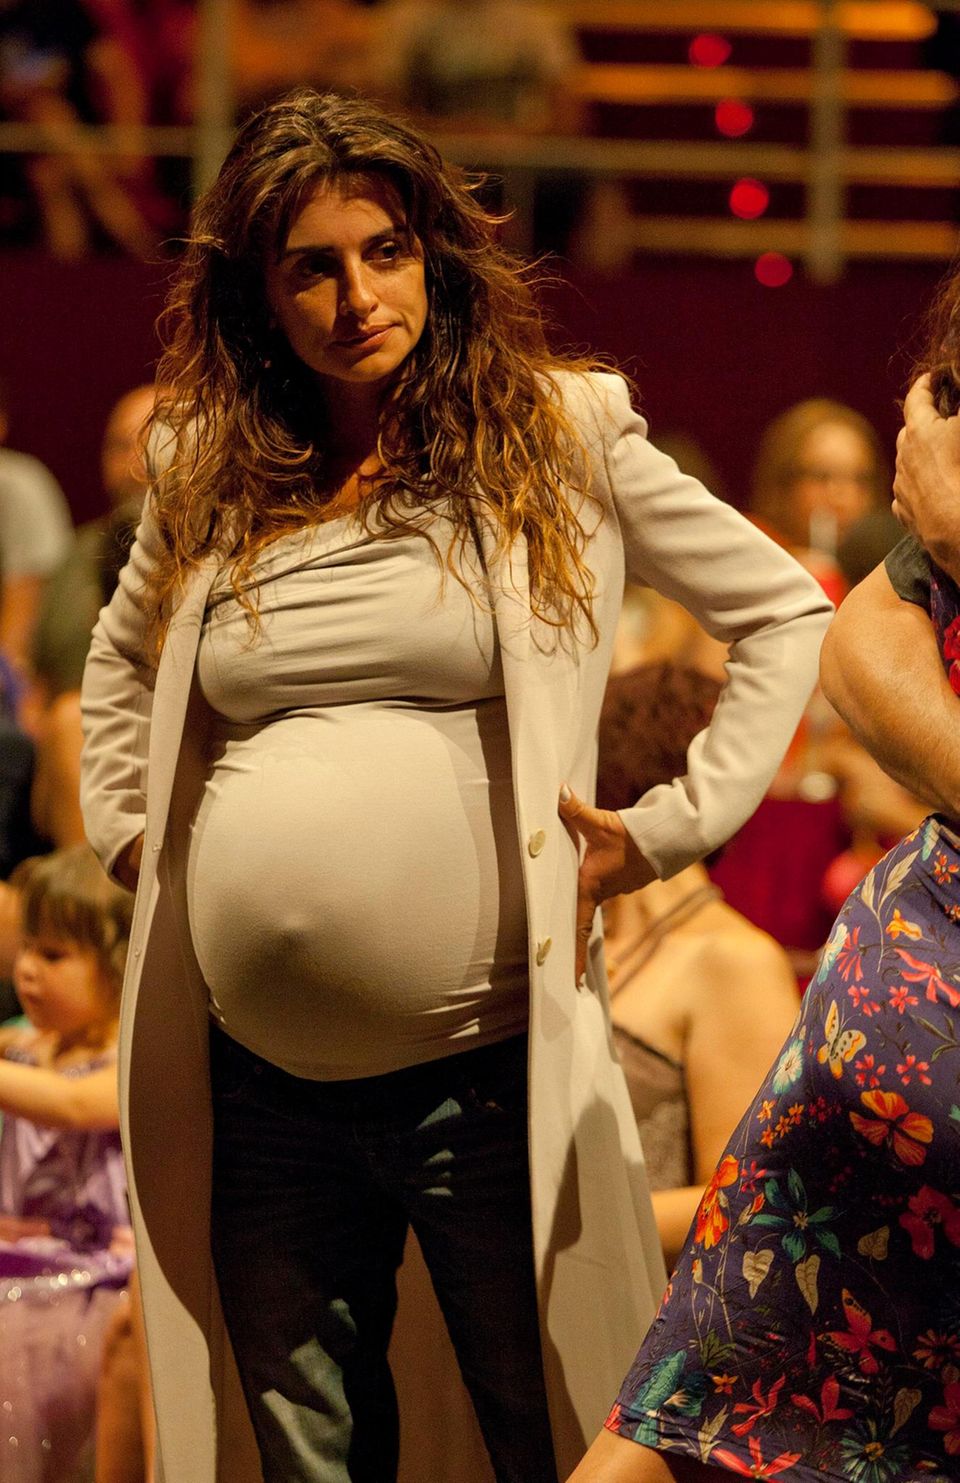 20. Juli 2013: Die hochschwangere Penelope Cruz besucht ein Konzert in Madrid.